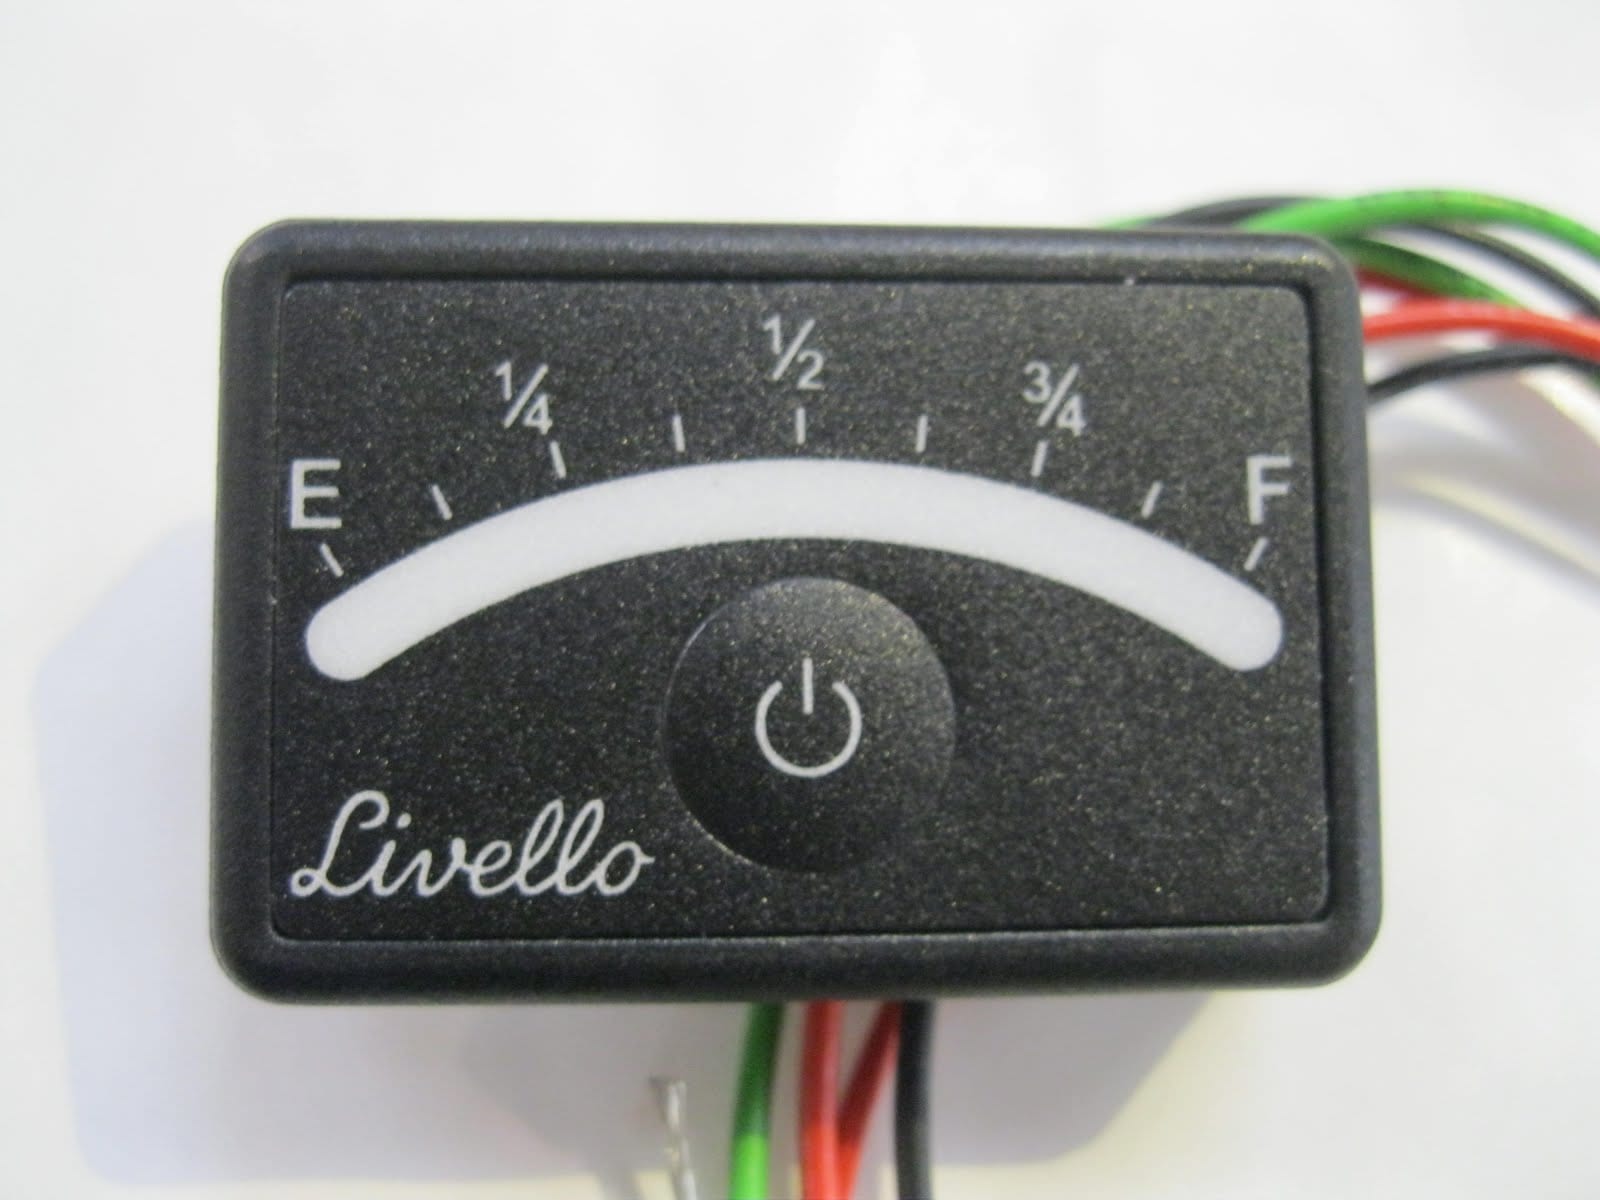 Level 9 LED indicator